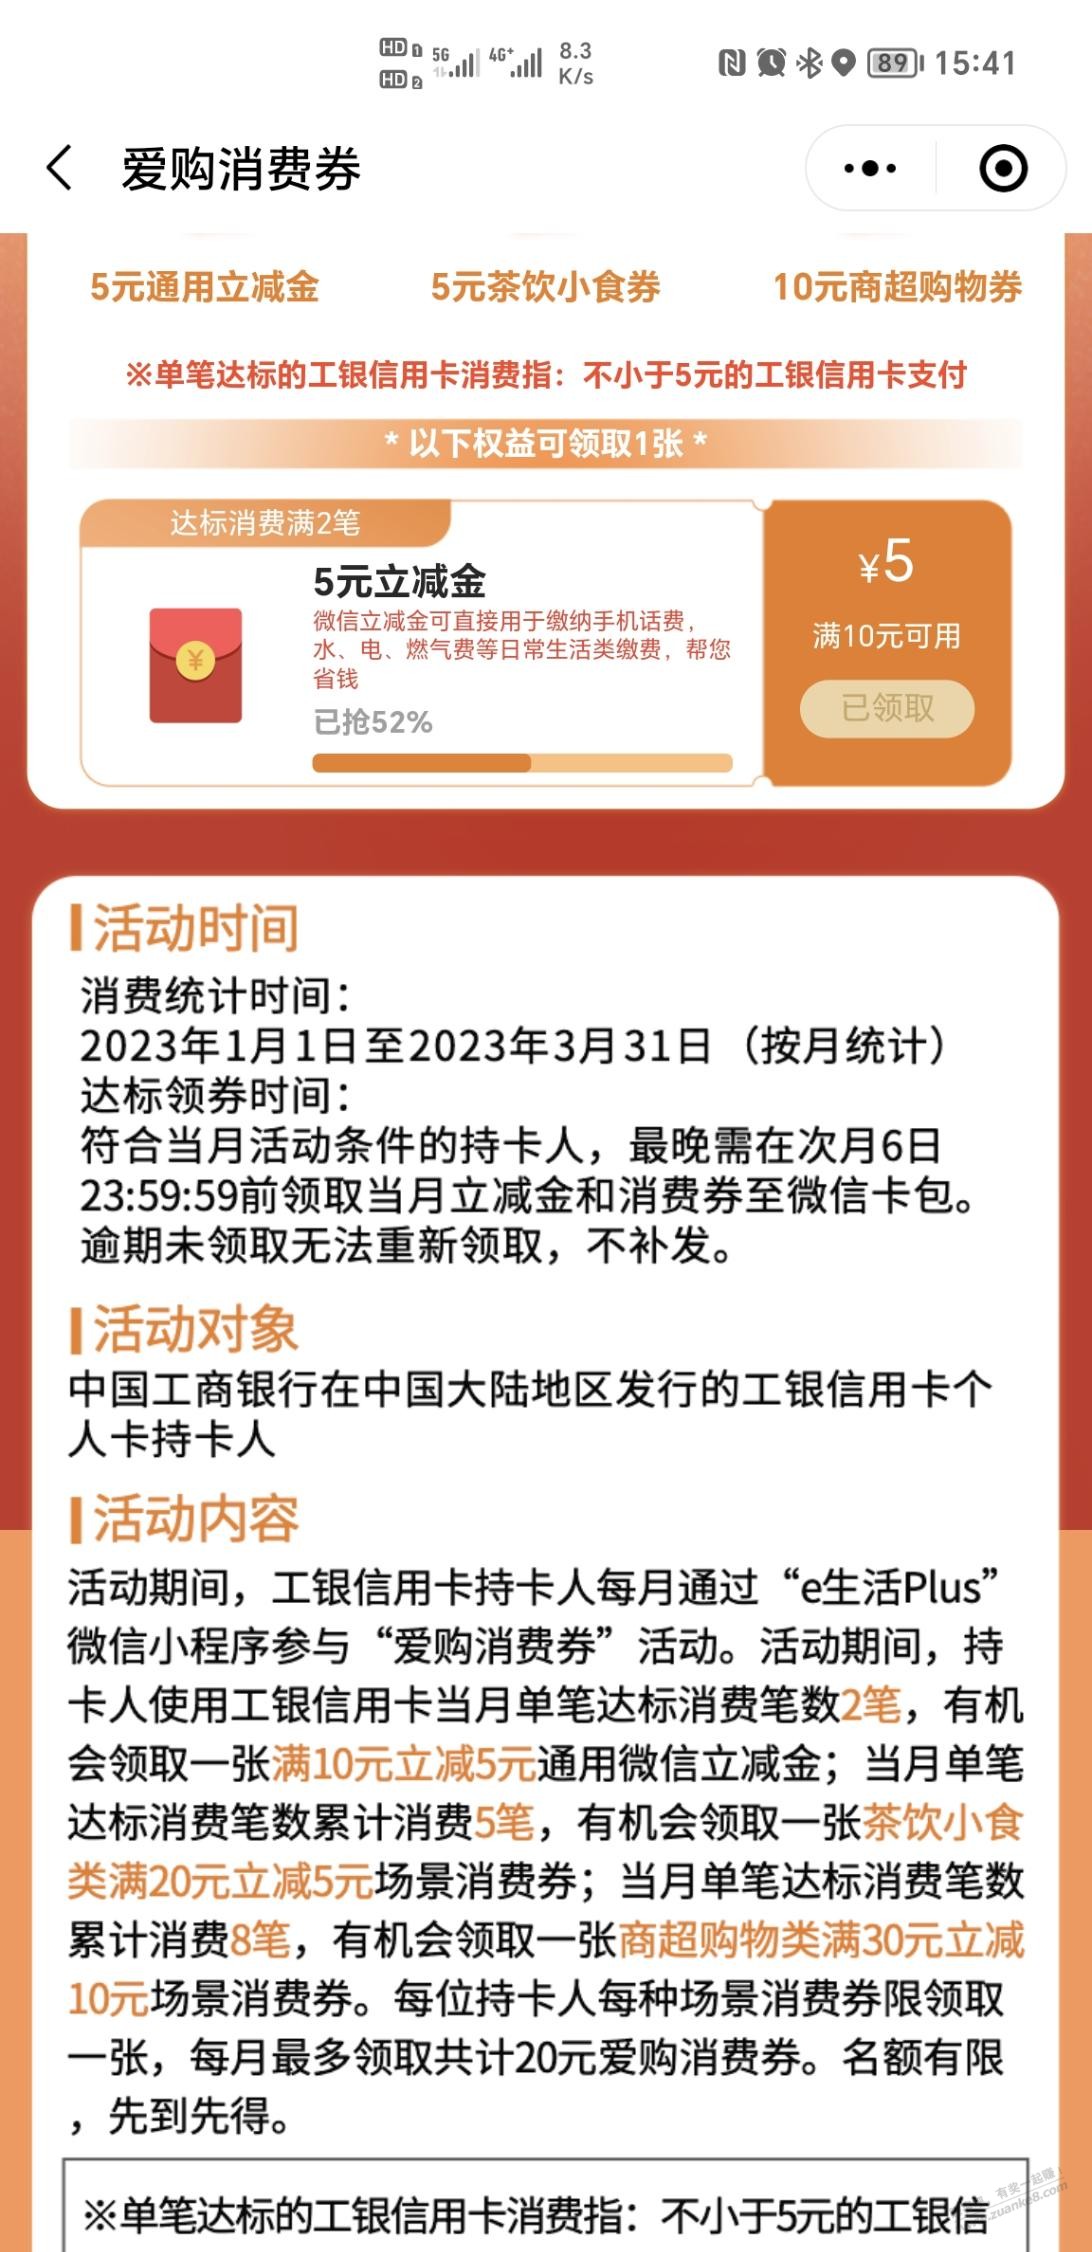 上海工行E生活plus10-5-惠小助(52huixz.com)